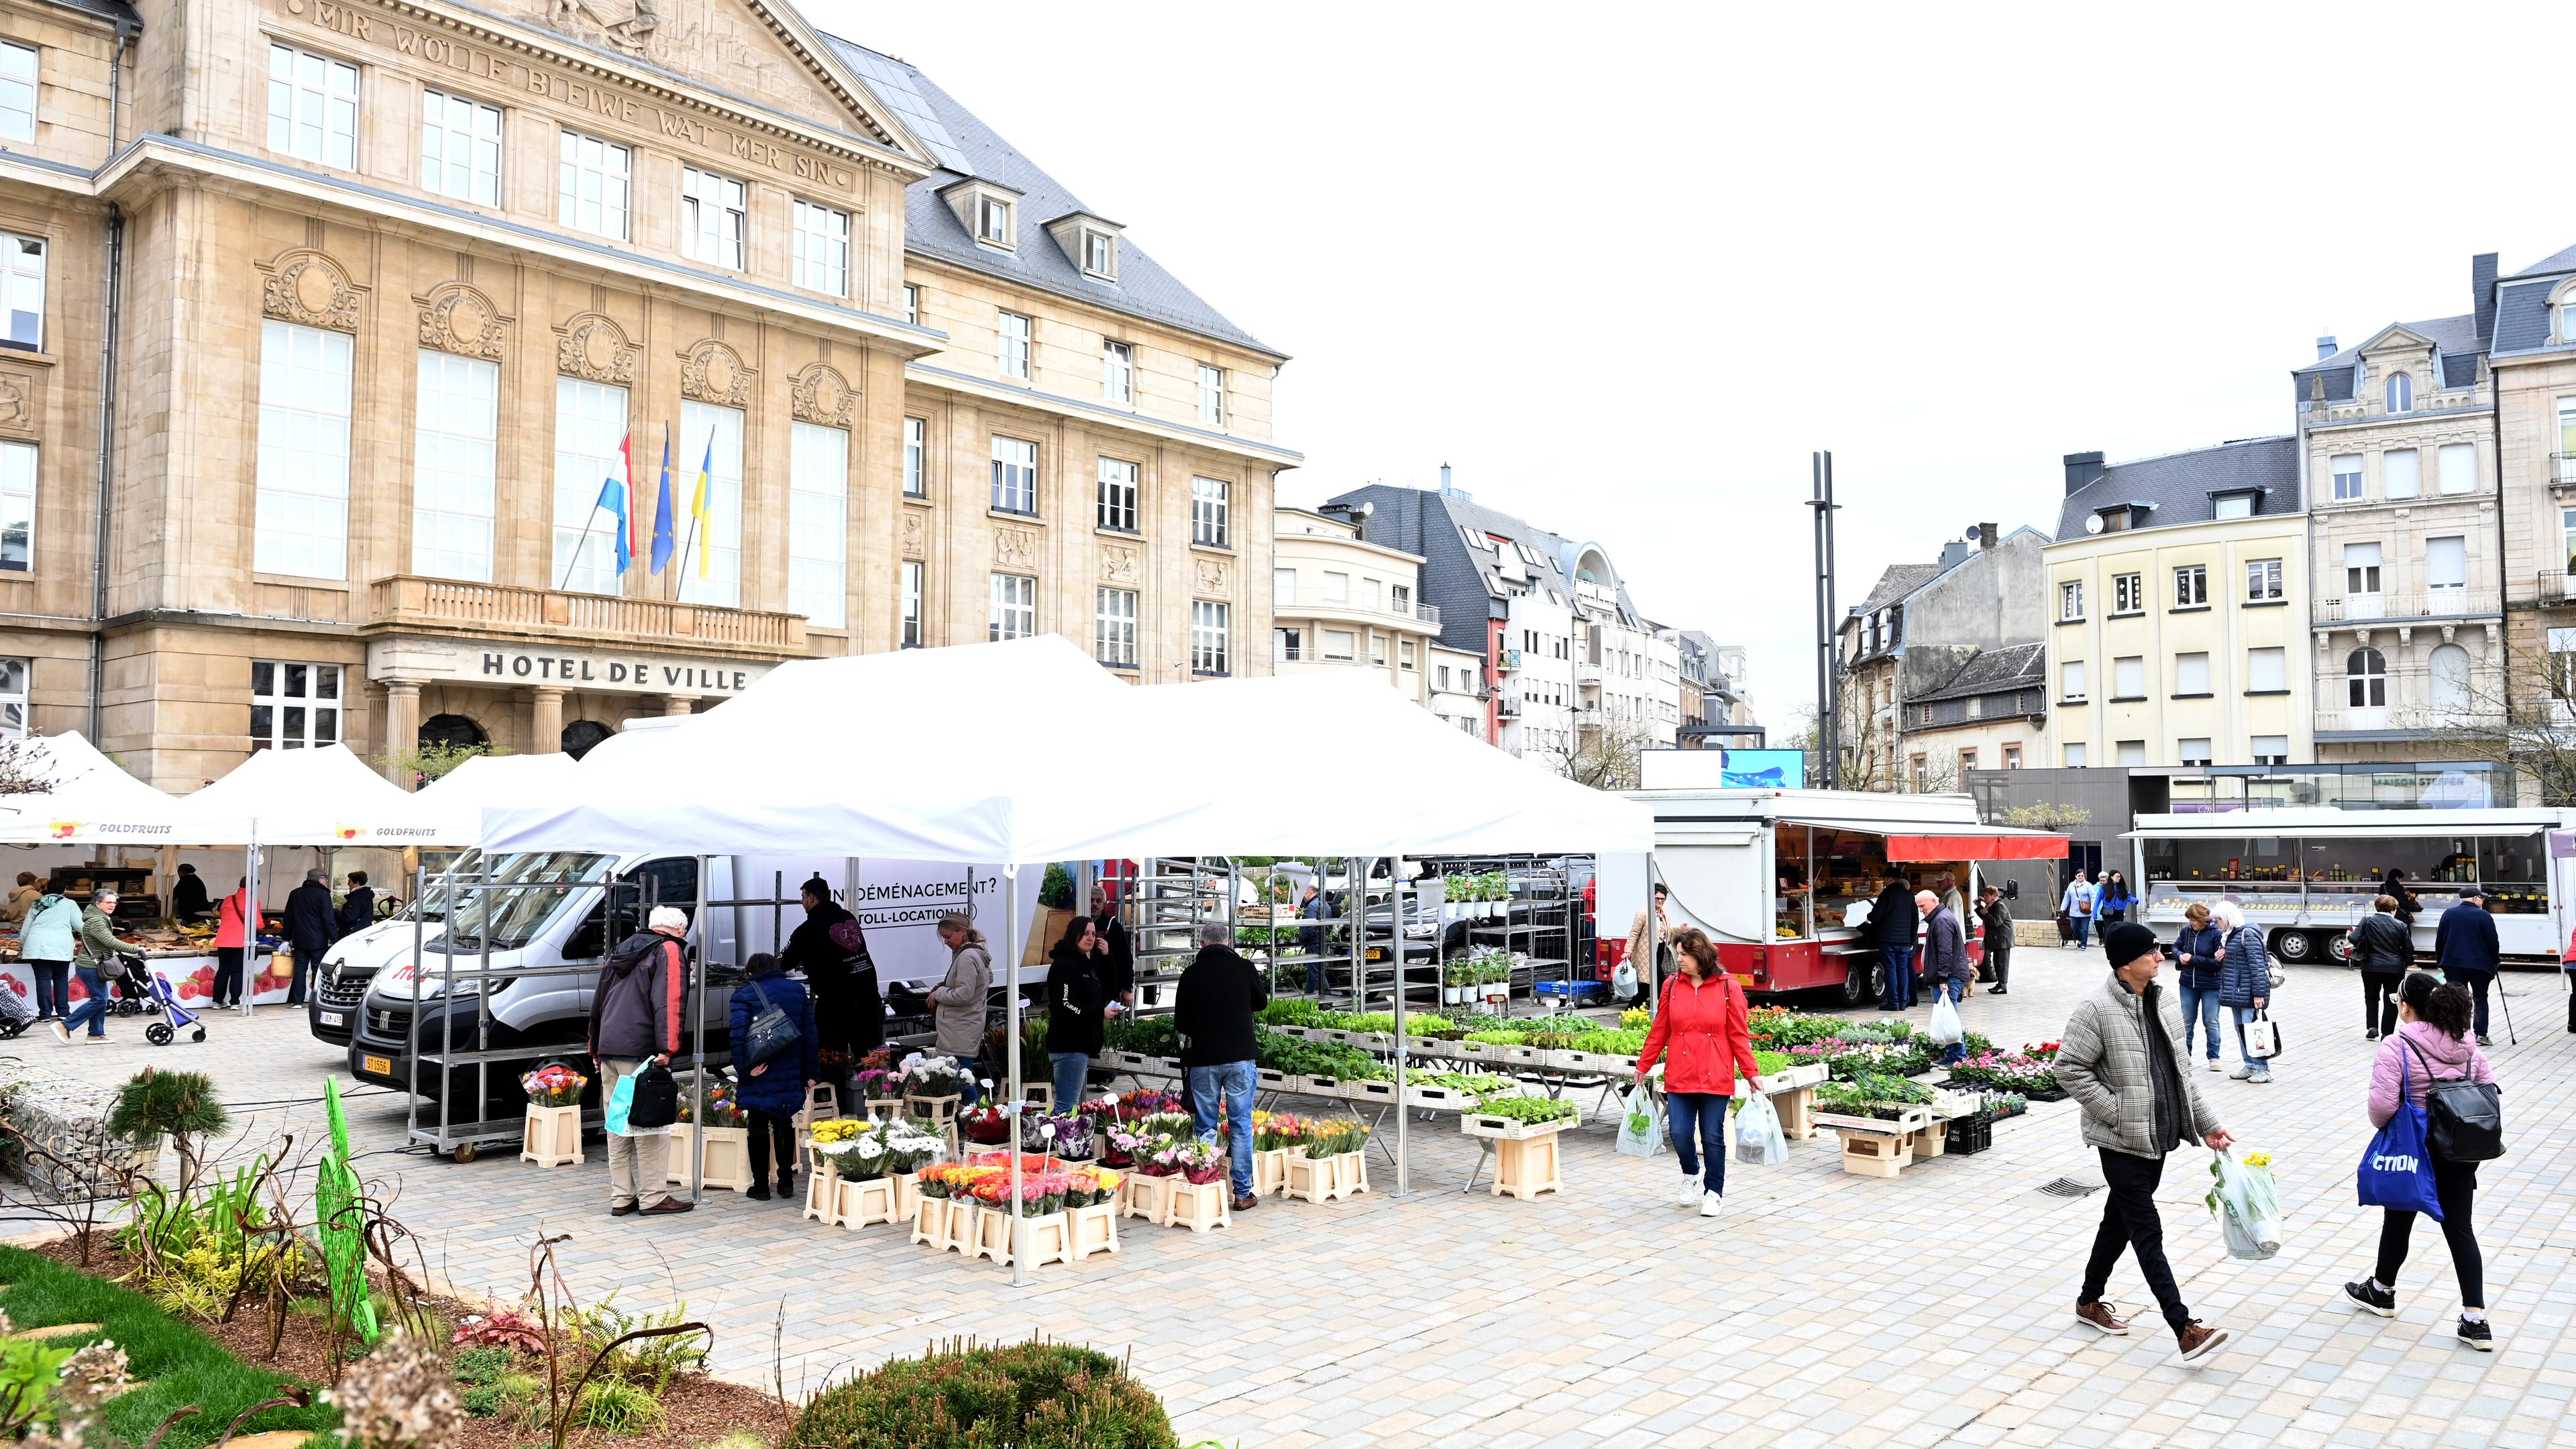 Eigentlich findet der Markt auf dem Rathausplatz statt. Regelmäßig müssen die Stände aber auf den Brillplatz ausweichen.